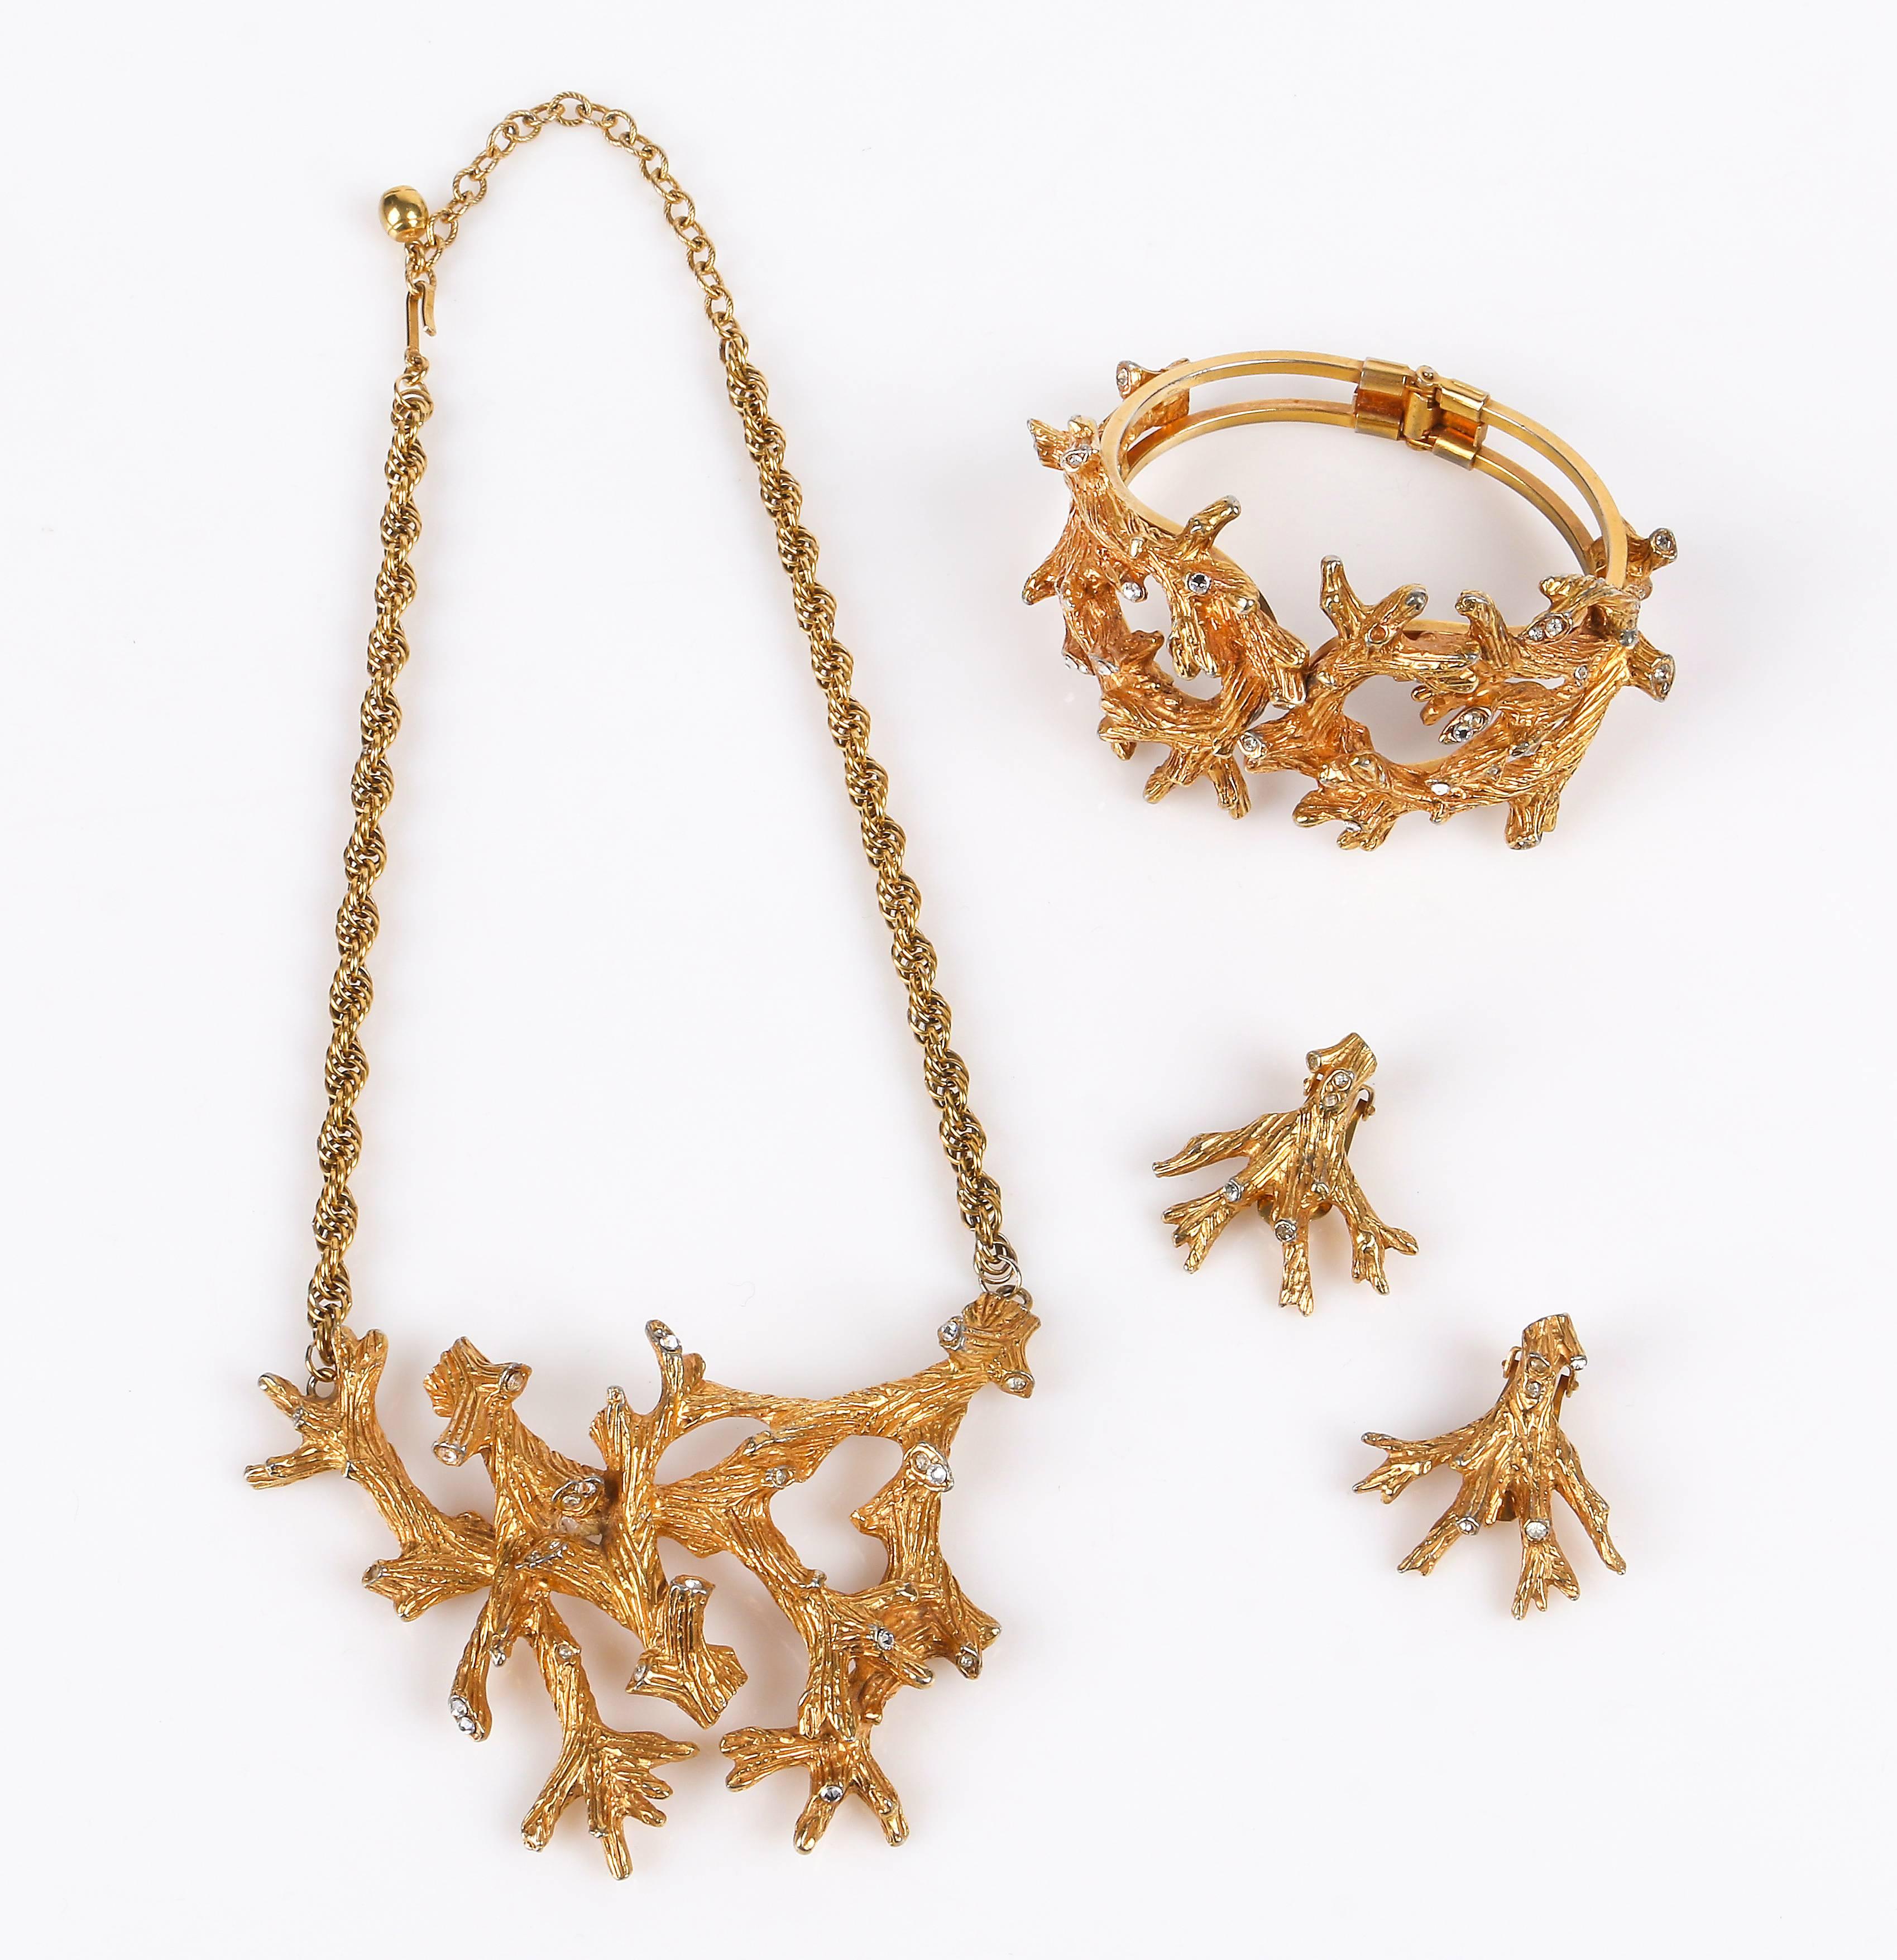 Vintage c.1960's Hattie Carnegie gold tone tree / coral branch rhinestones bracelet, boucles d'oreilles et collier. Le bracelet à anneaux en ton or avec des branches d'arbre/de corail texturées et sculptées et des strass en cristal insérés mesure 2